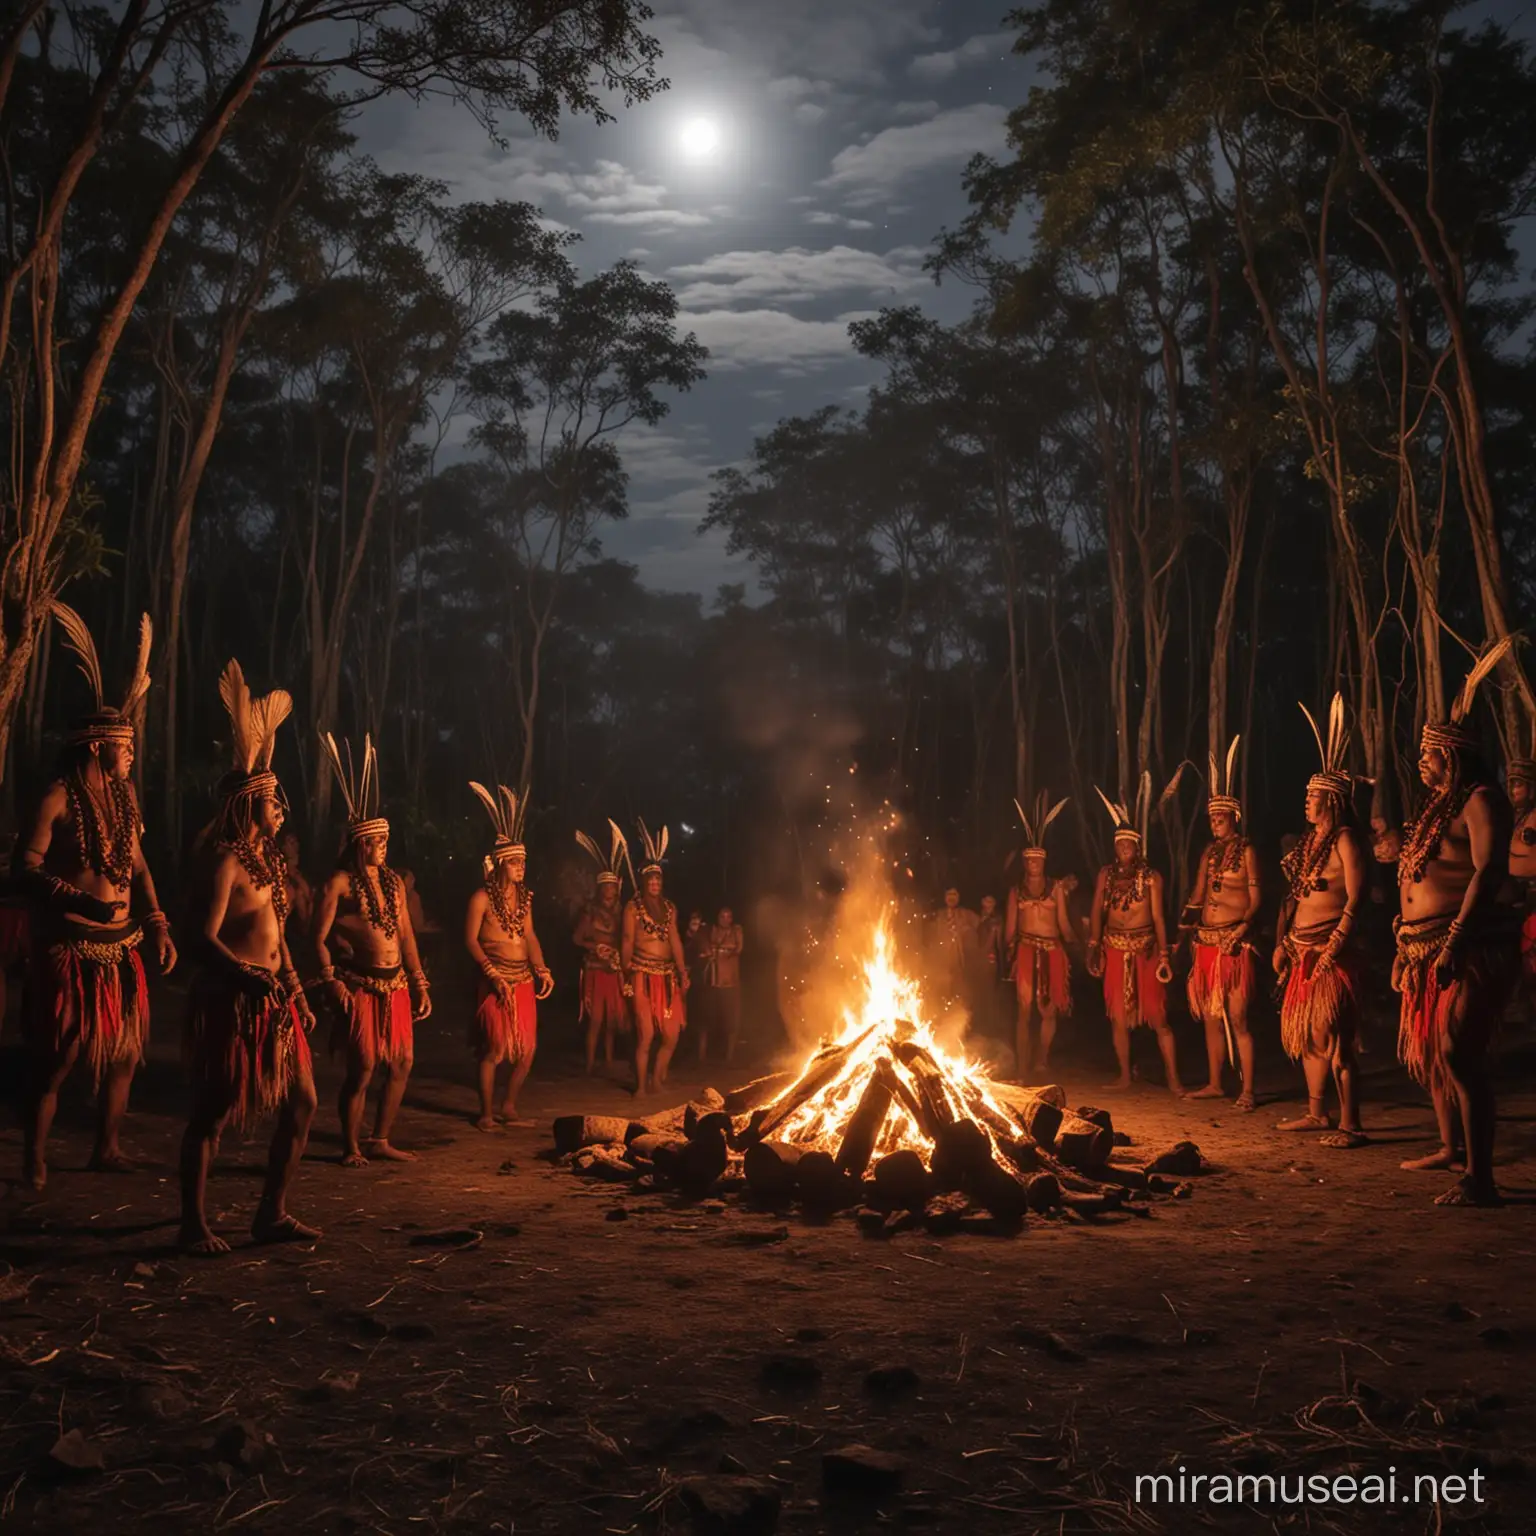 Una tribù di Huli danza nel bosco accanto al falò. La luna splende 